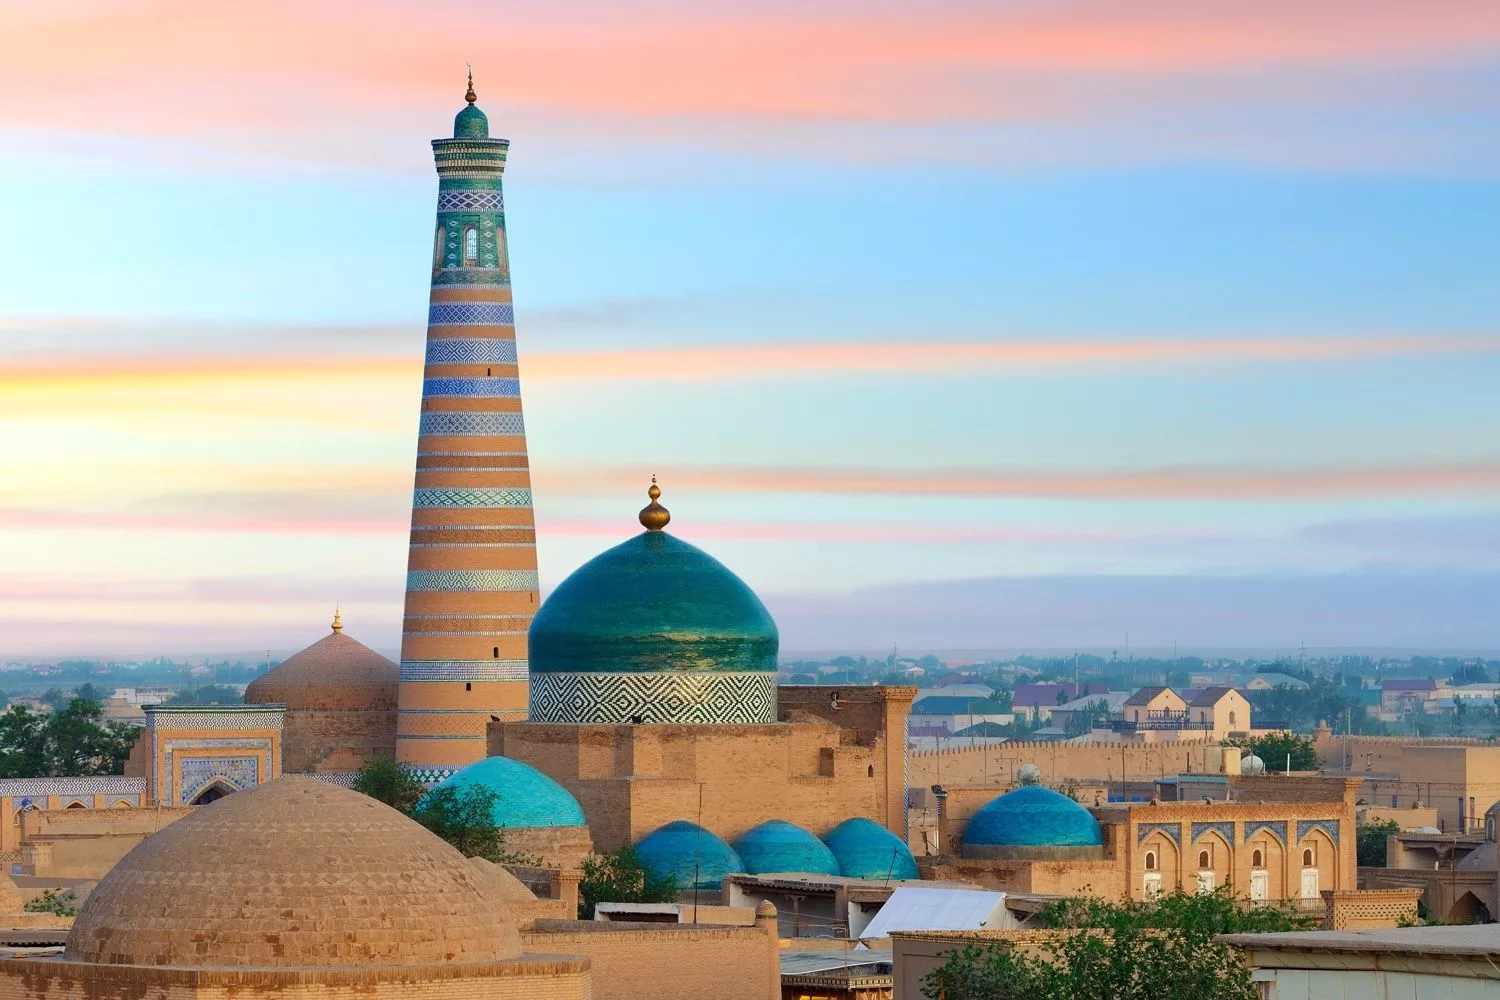 Упрощение визового режима, сохранение культурного наследия и благоустройство исторических городов: как развивается туризм в Узбекистане